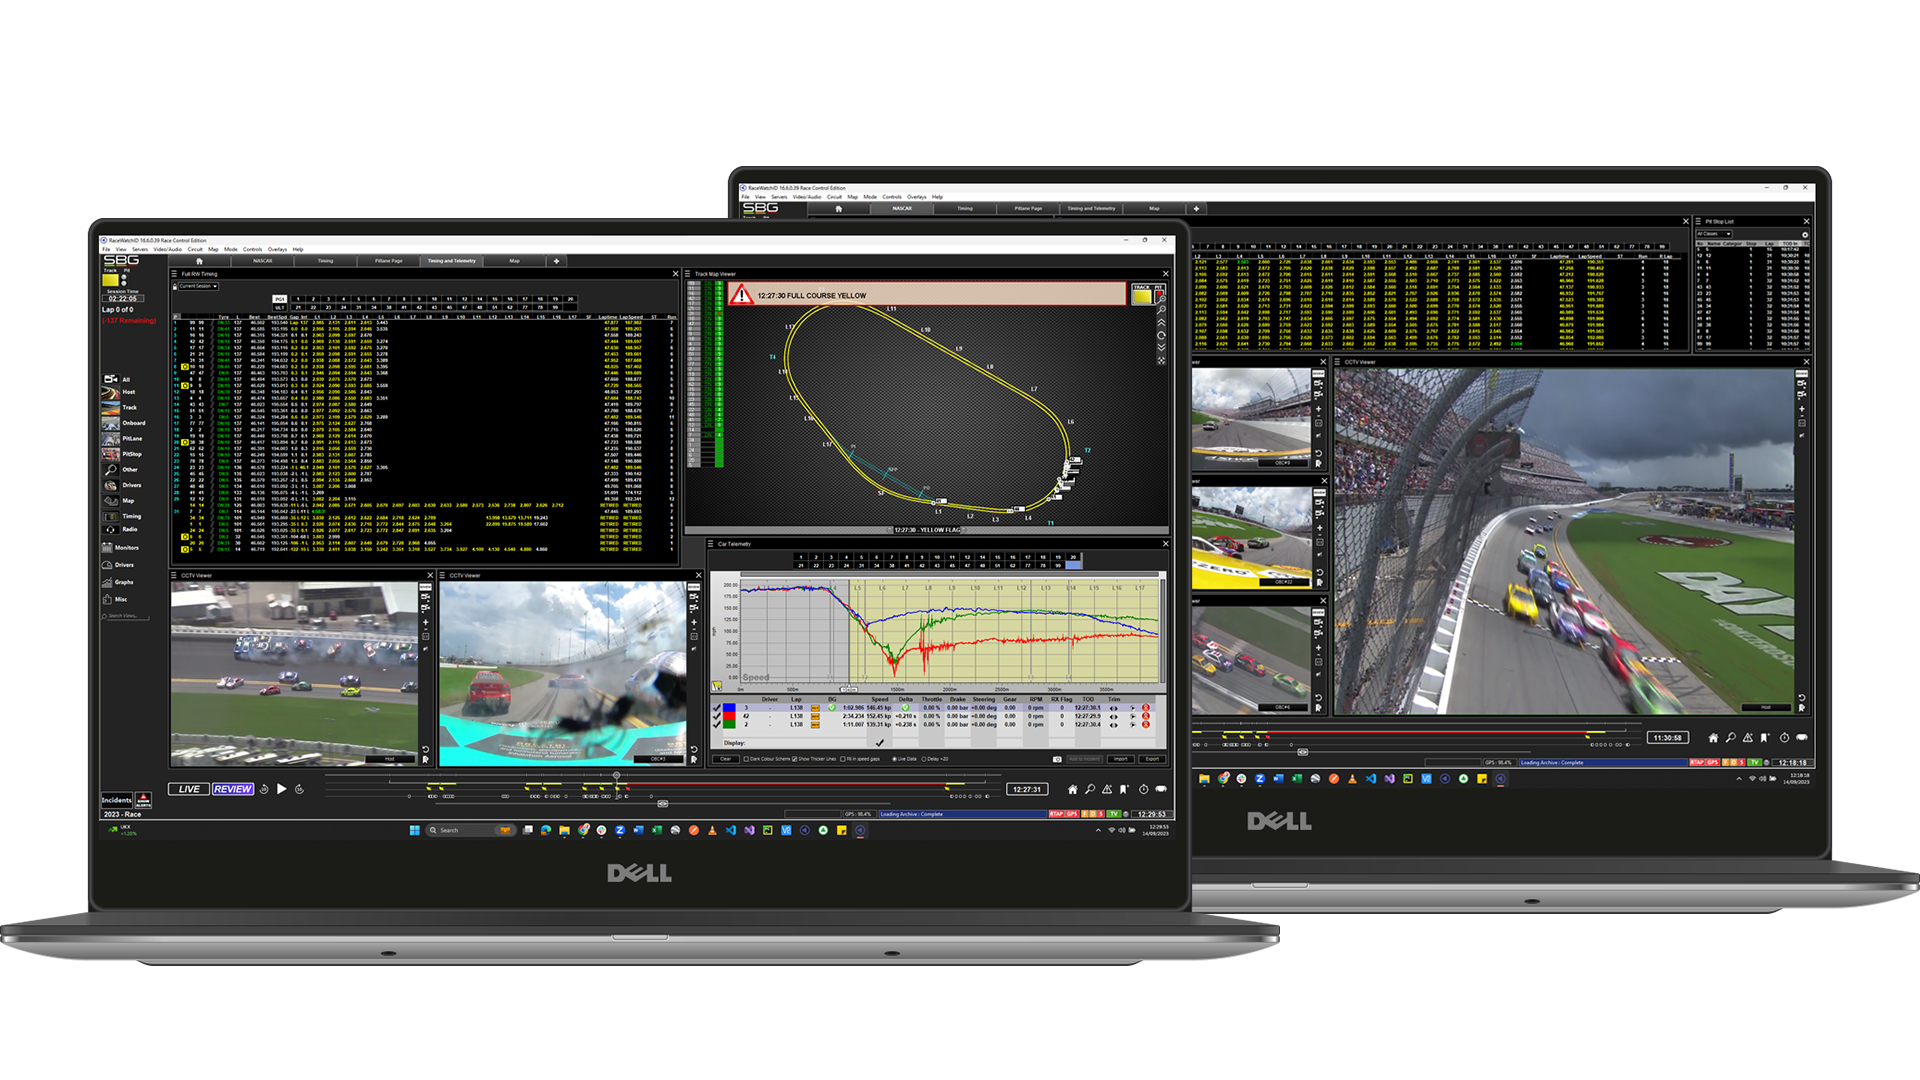  O conjunto RaceWatch de sofisticados sistemas de análise de dados, visualização, vídeo e estratégia está em uso constante pelos organizadores e equipes de corrida ao longo da temporada, tanto na pista quanto nas fábricas de equipes em todo o mundo.